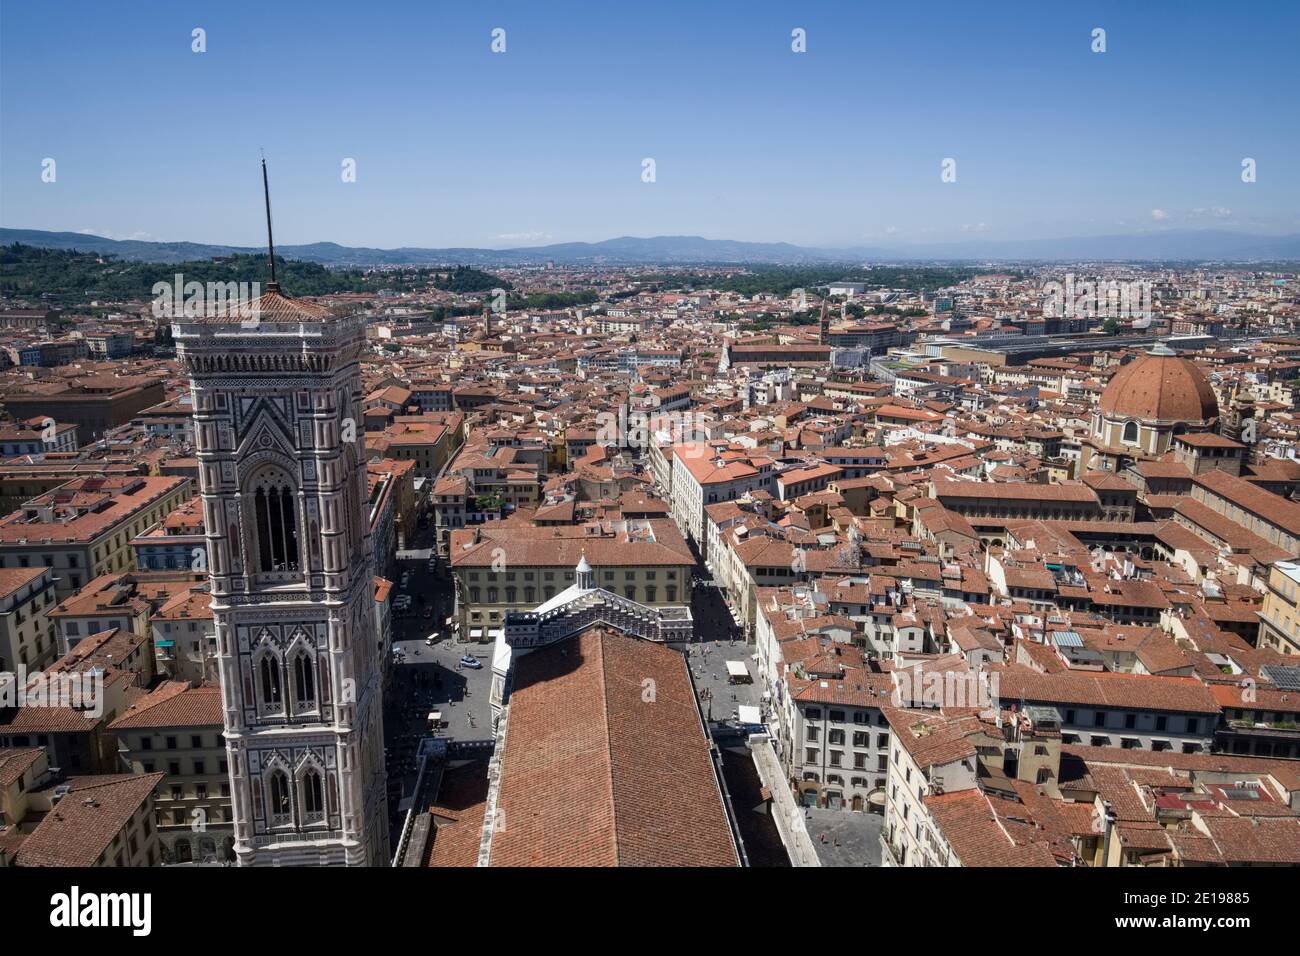 Italie, Toscane: Florence (Florence en italien). La ville et le Campanile de Giotto vu du dôme de la cathédrale de Santa Maria del Fiore (Th Banque D'Images